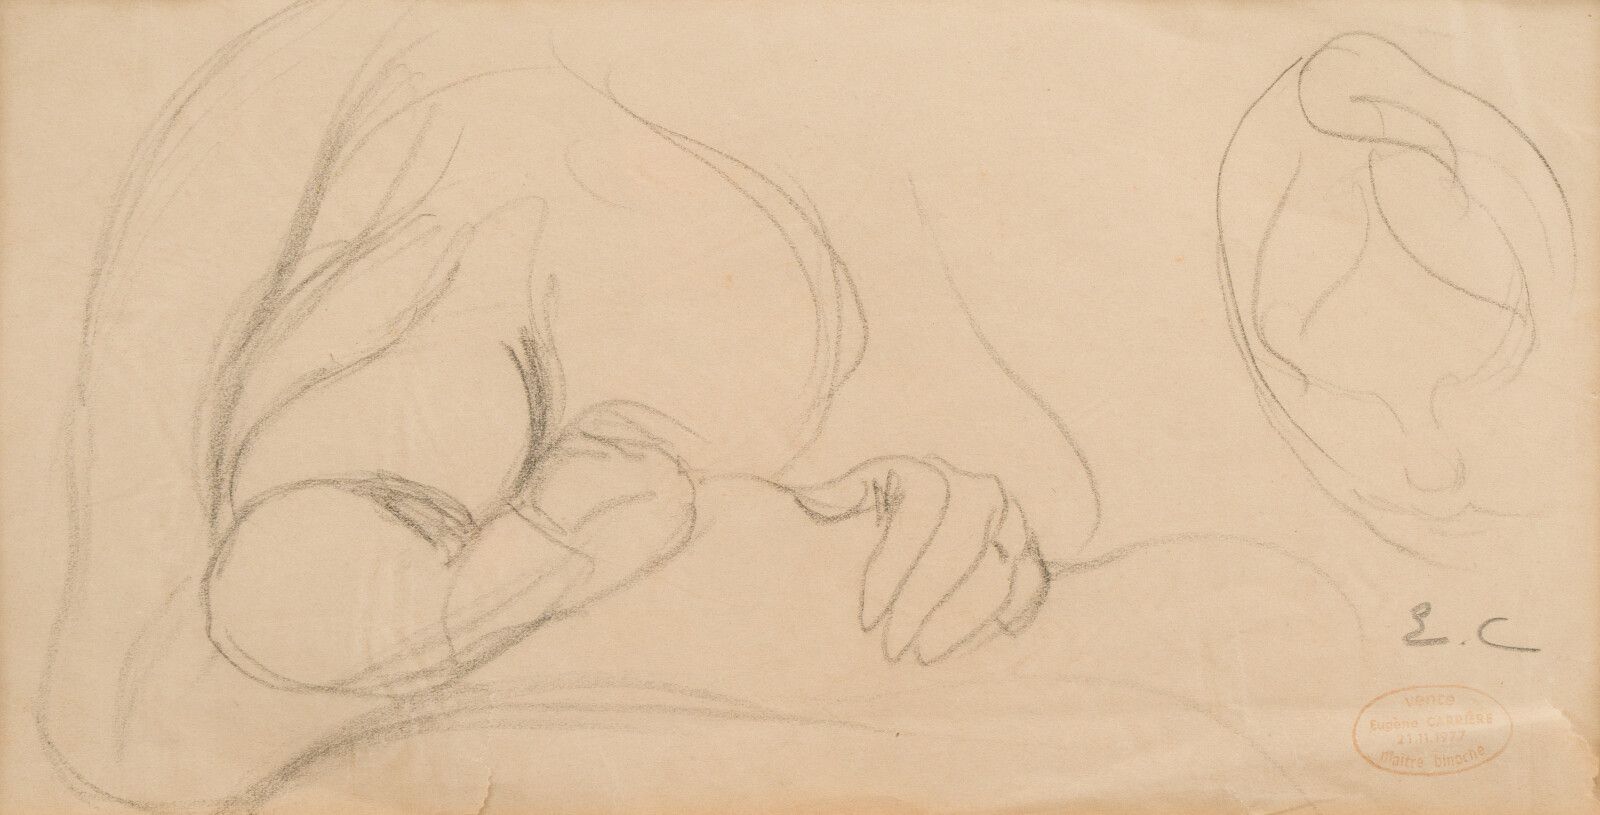 Null 43.欧仁-卡里尔 (1849-1906)

母乳喂养的妇女

纸上绘画。

右下角有 "EC "字样和1977年11月21日的销售印章。

12 x&hellip;